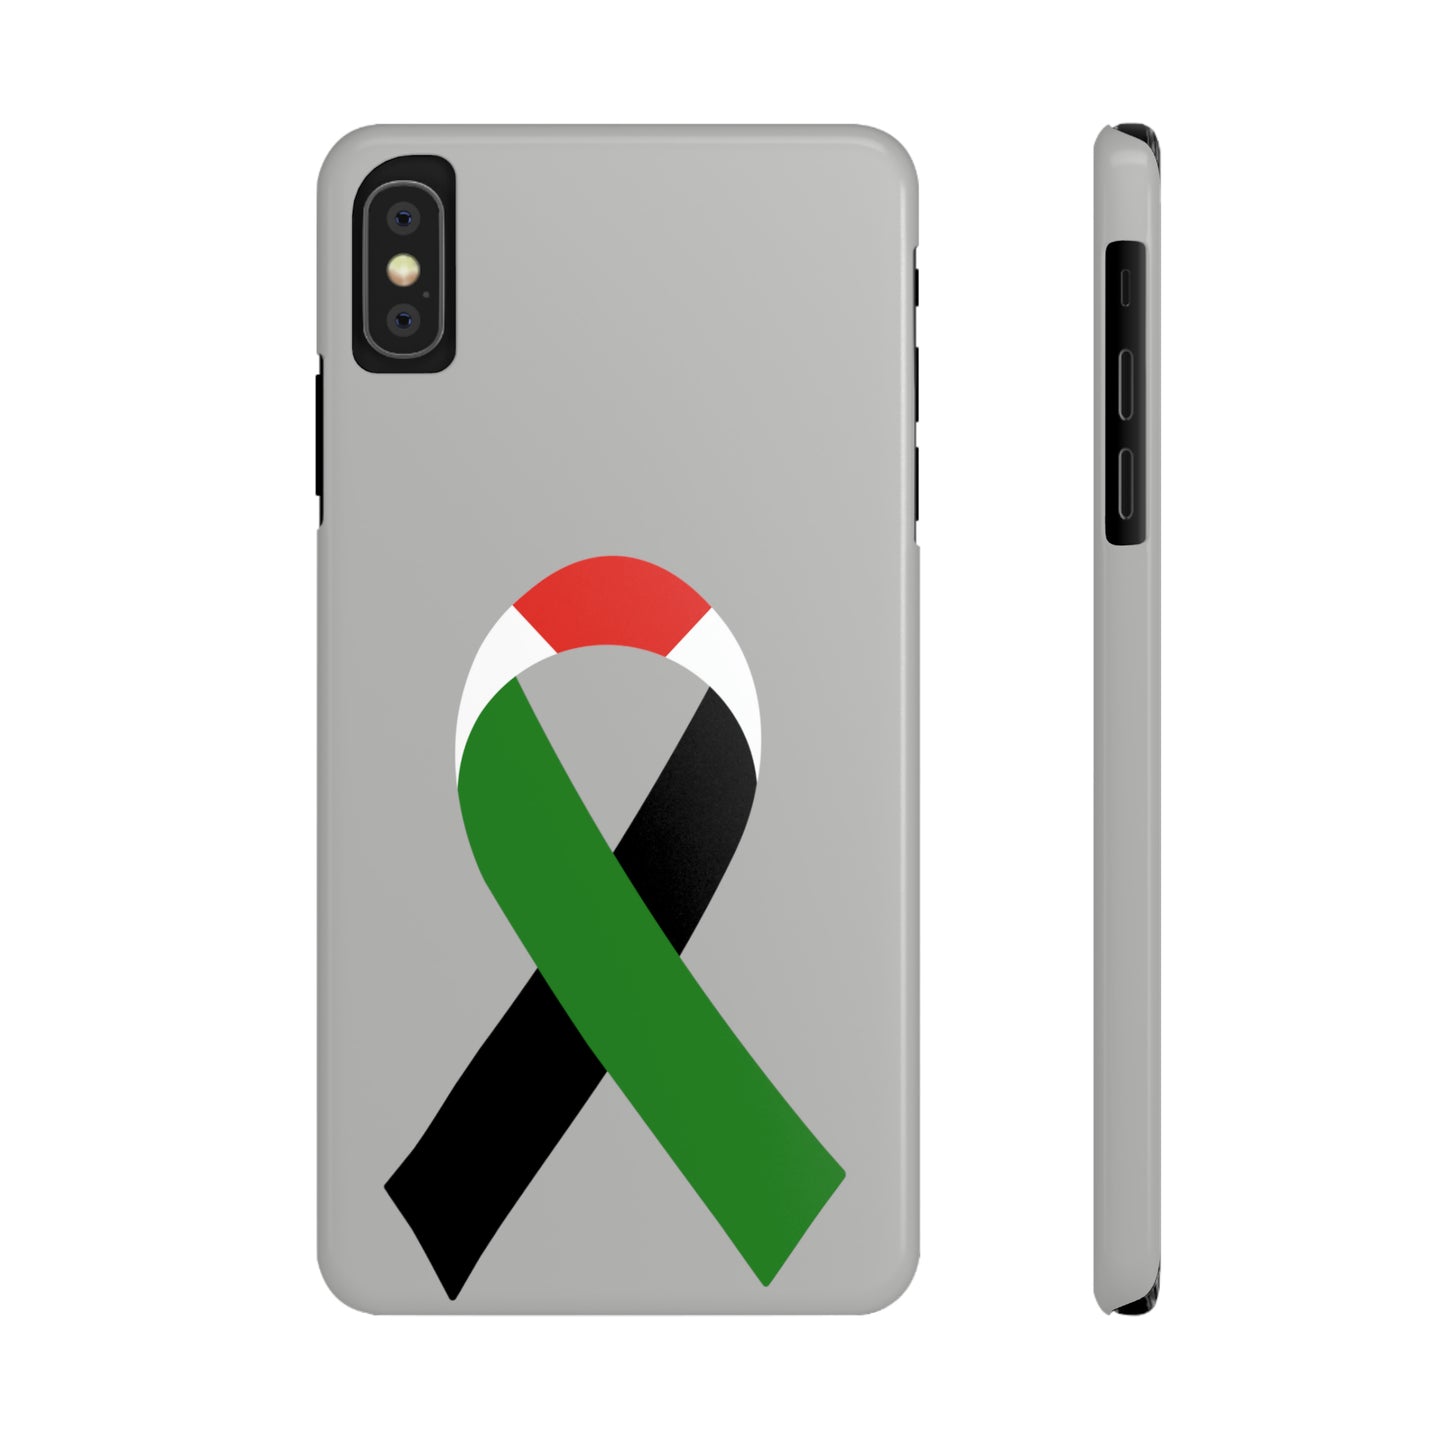 Slim Phone Cases